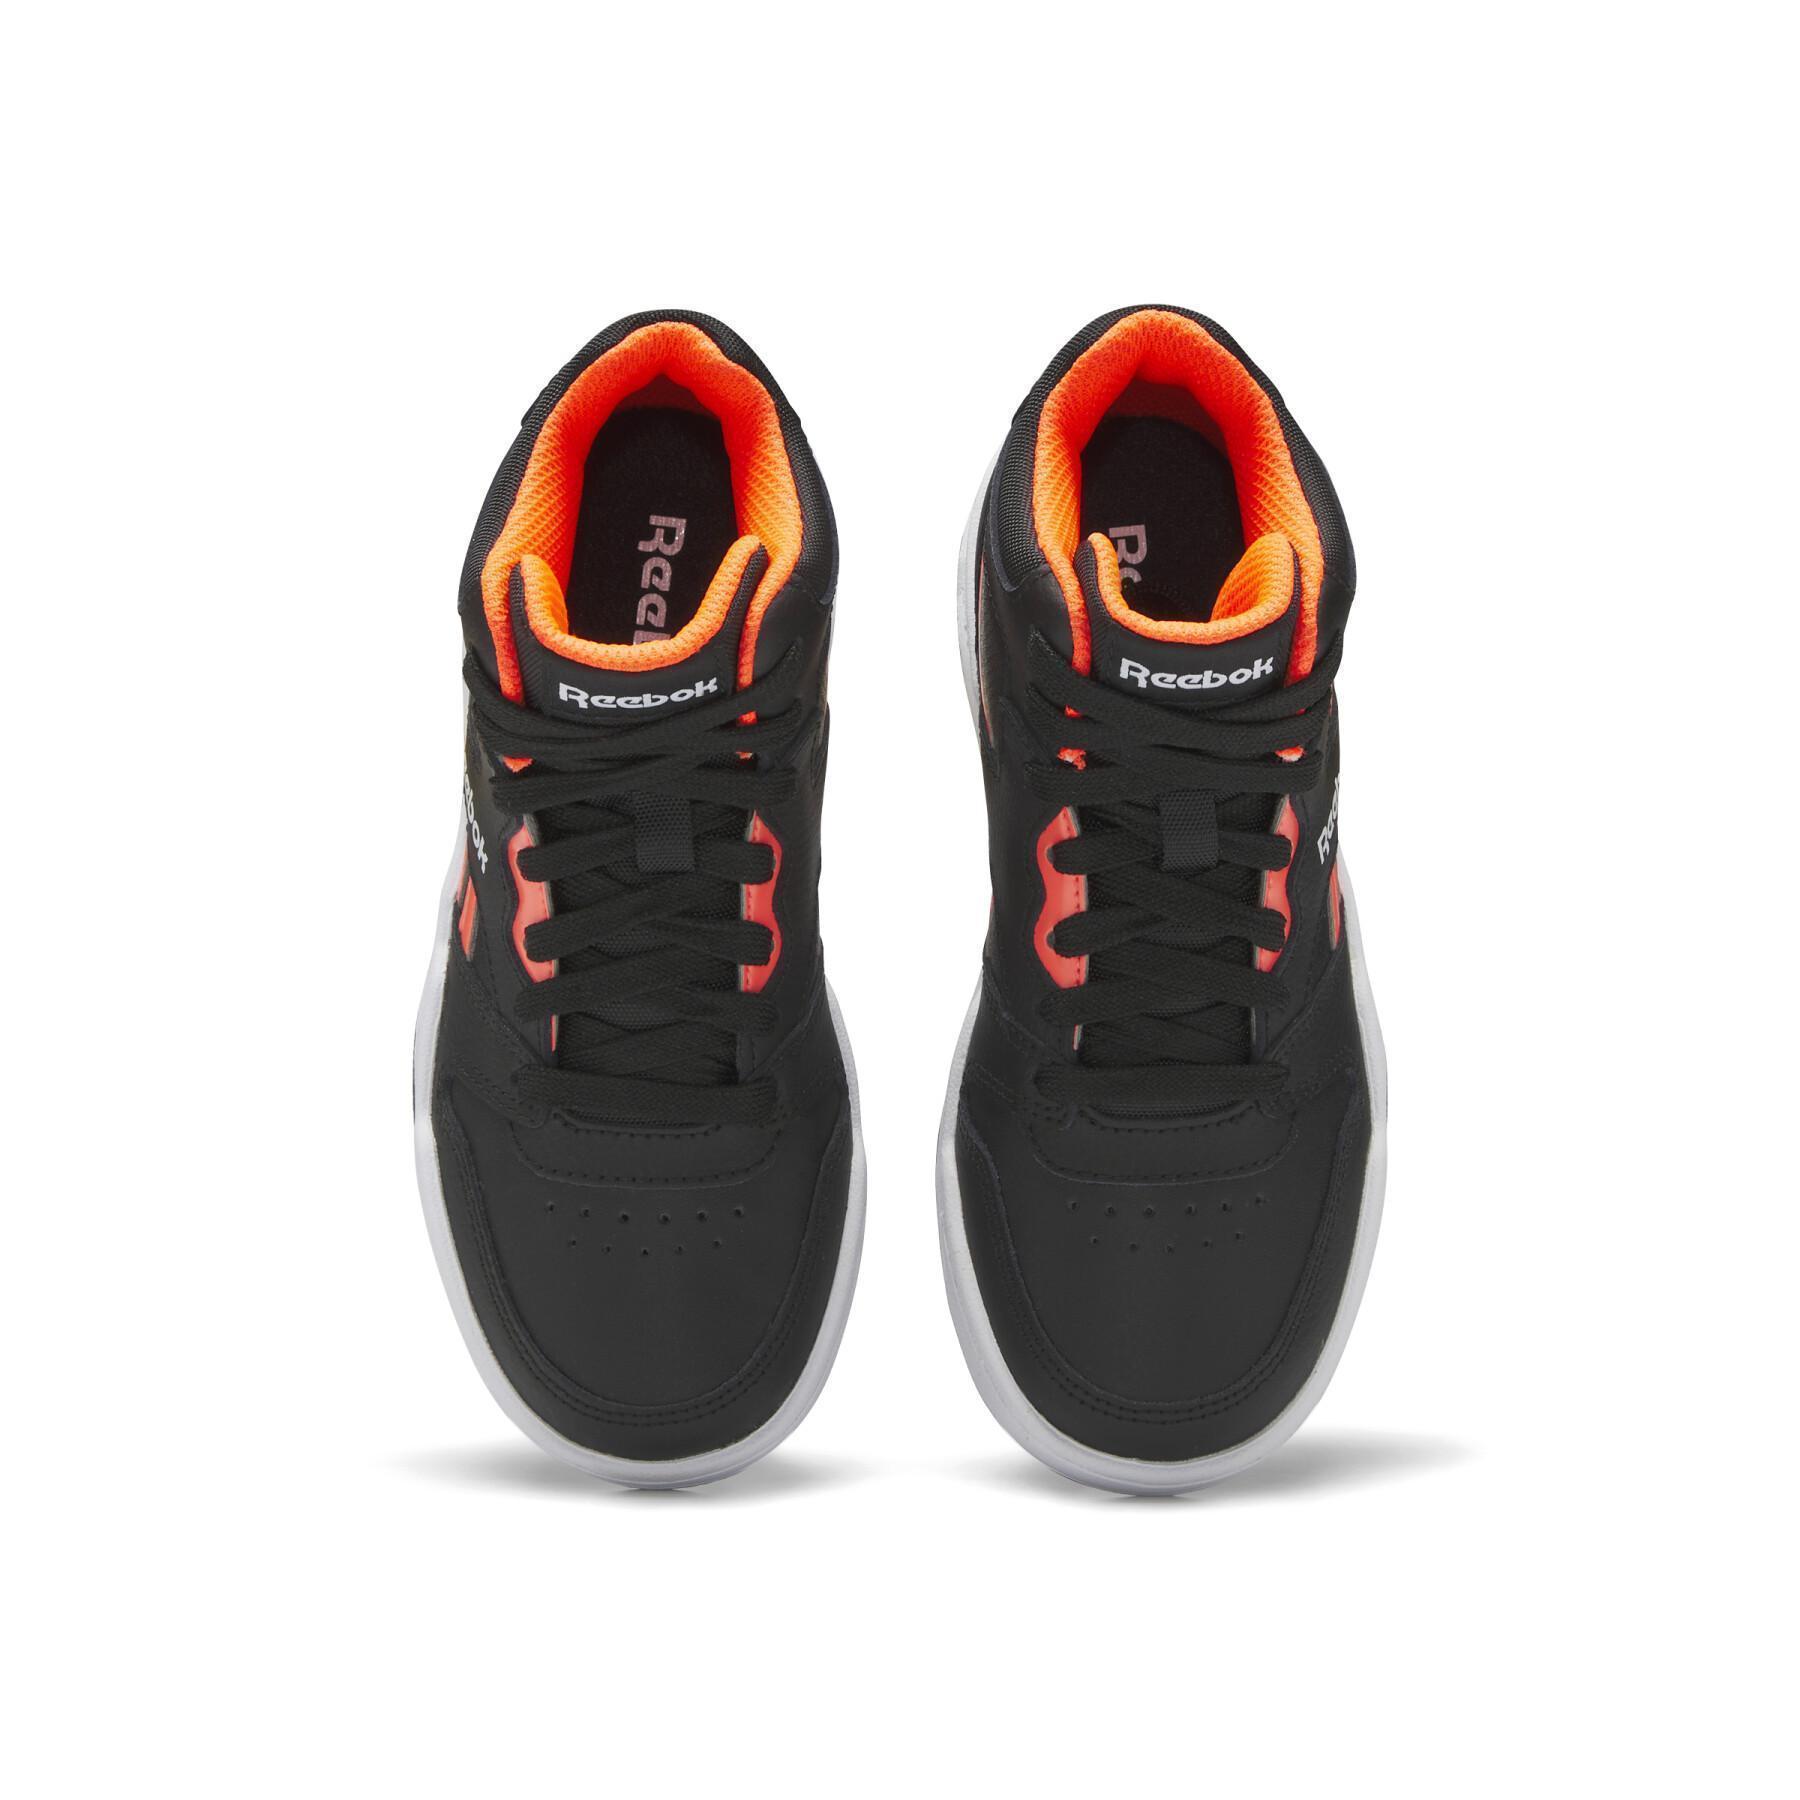 running-inspired sneaker from Reebok